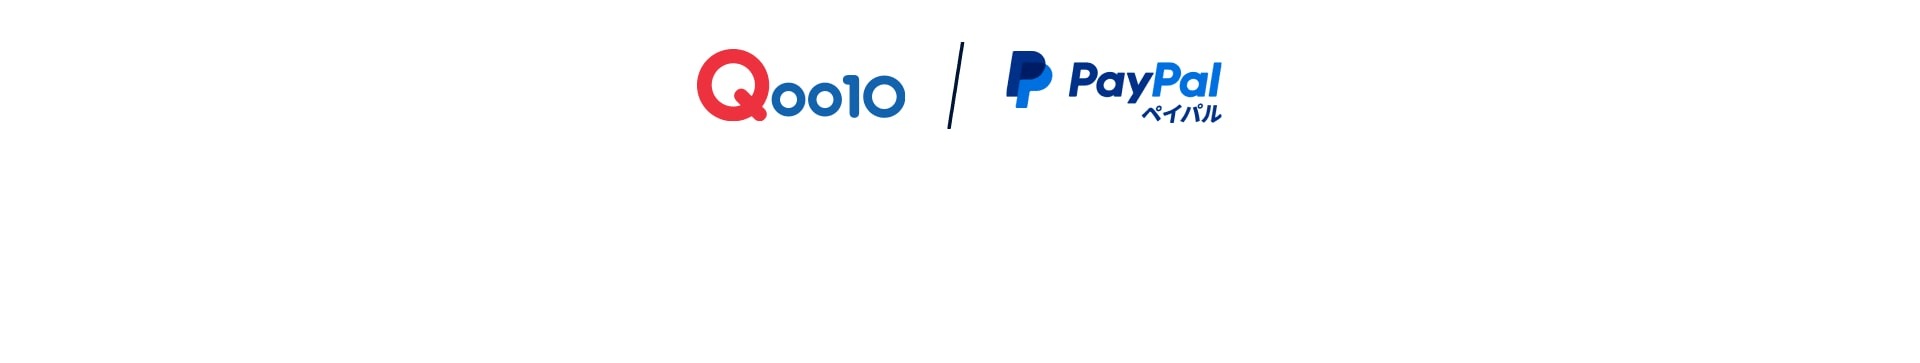 Qoo10 / Paypal